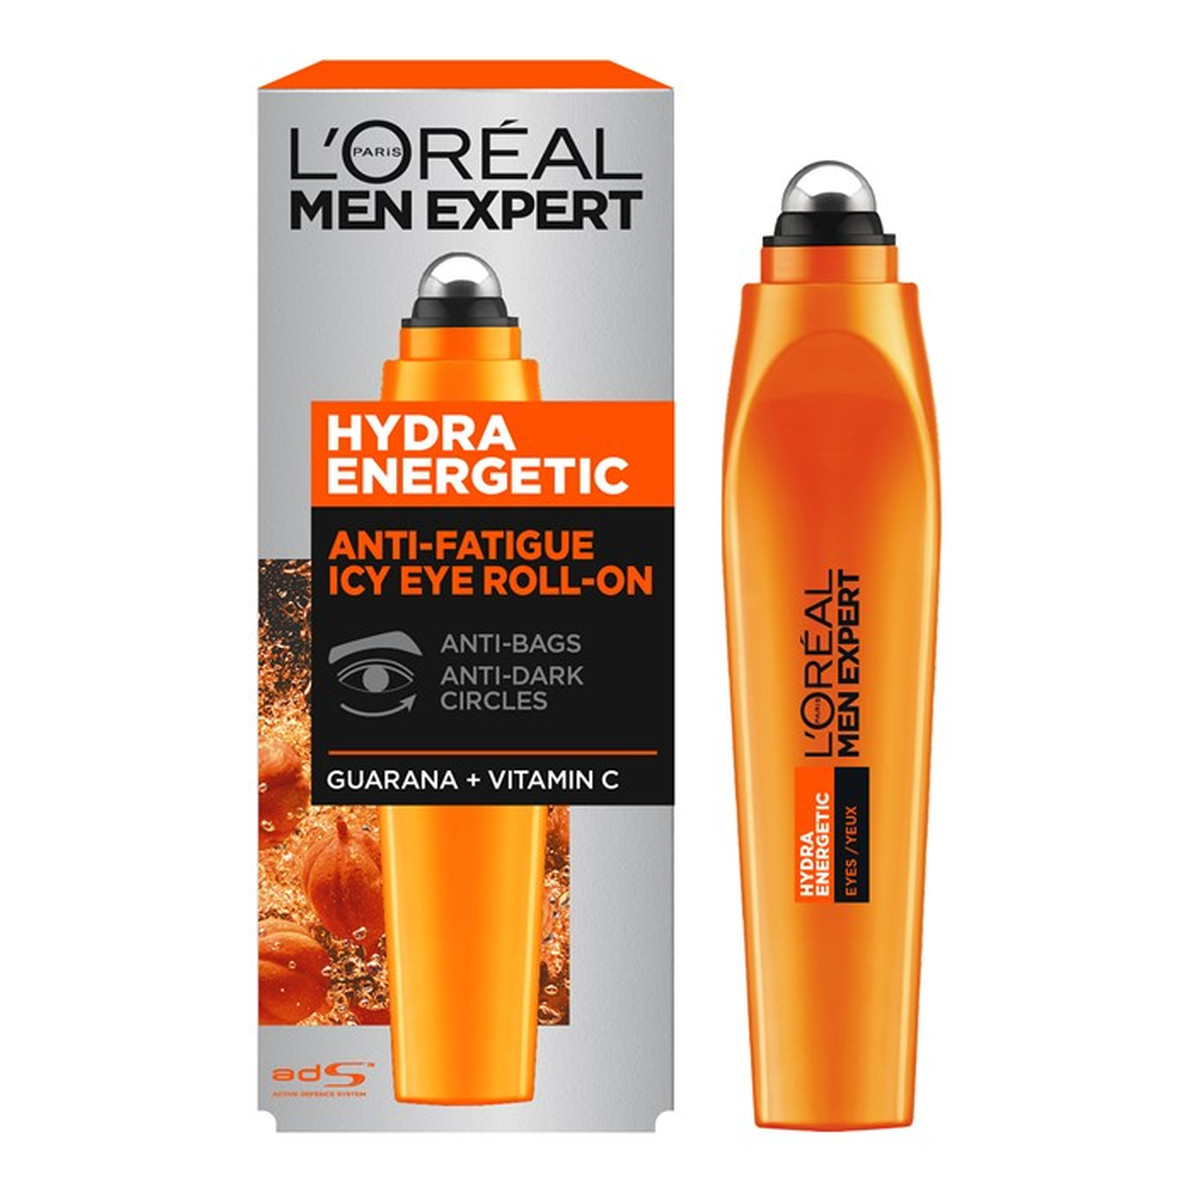 L'Oreal Paris Men Expert Hydra Energetic chłodzący roll-on pod oczy przeciw oznakom zmęczenia 10ml